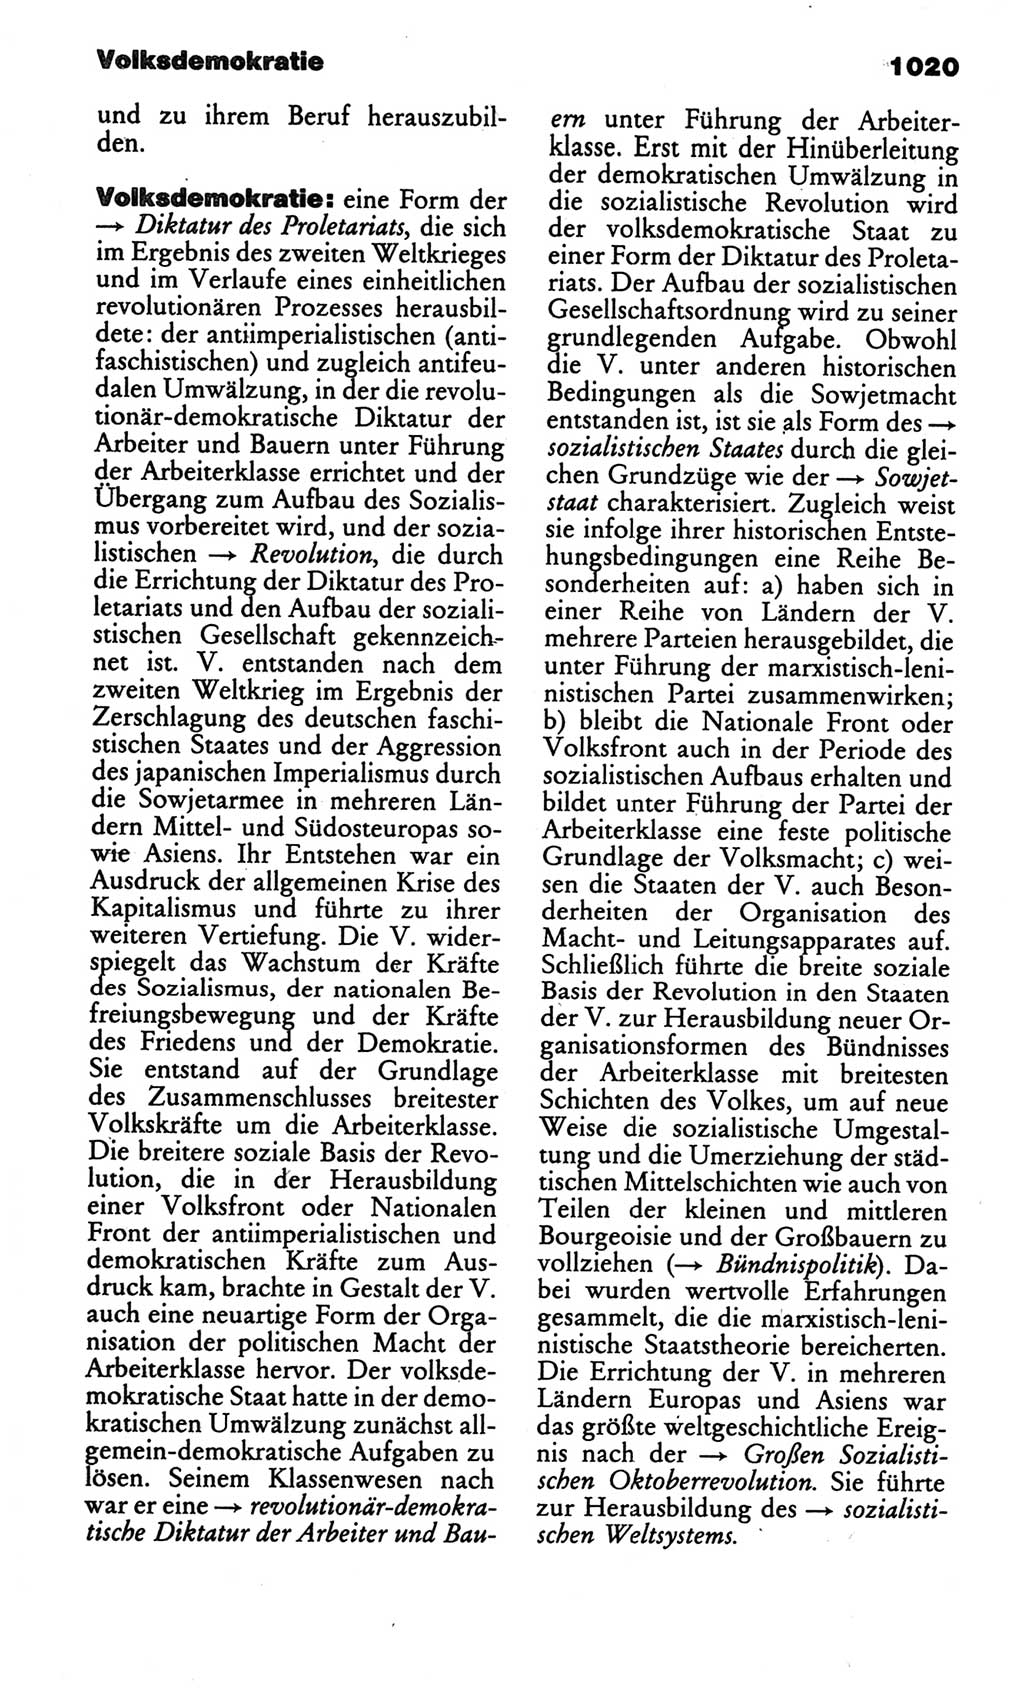 Kleines politisches Wörterbuch [Deutsche Demokratische Republik (DDR)] 1986, Seite 1020 (Kl. pol. Wb. DDR 1986, S. 1020)